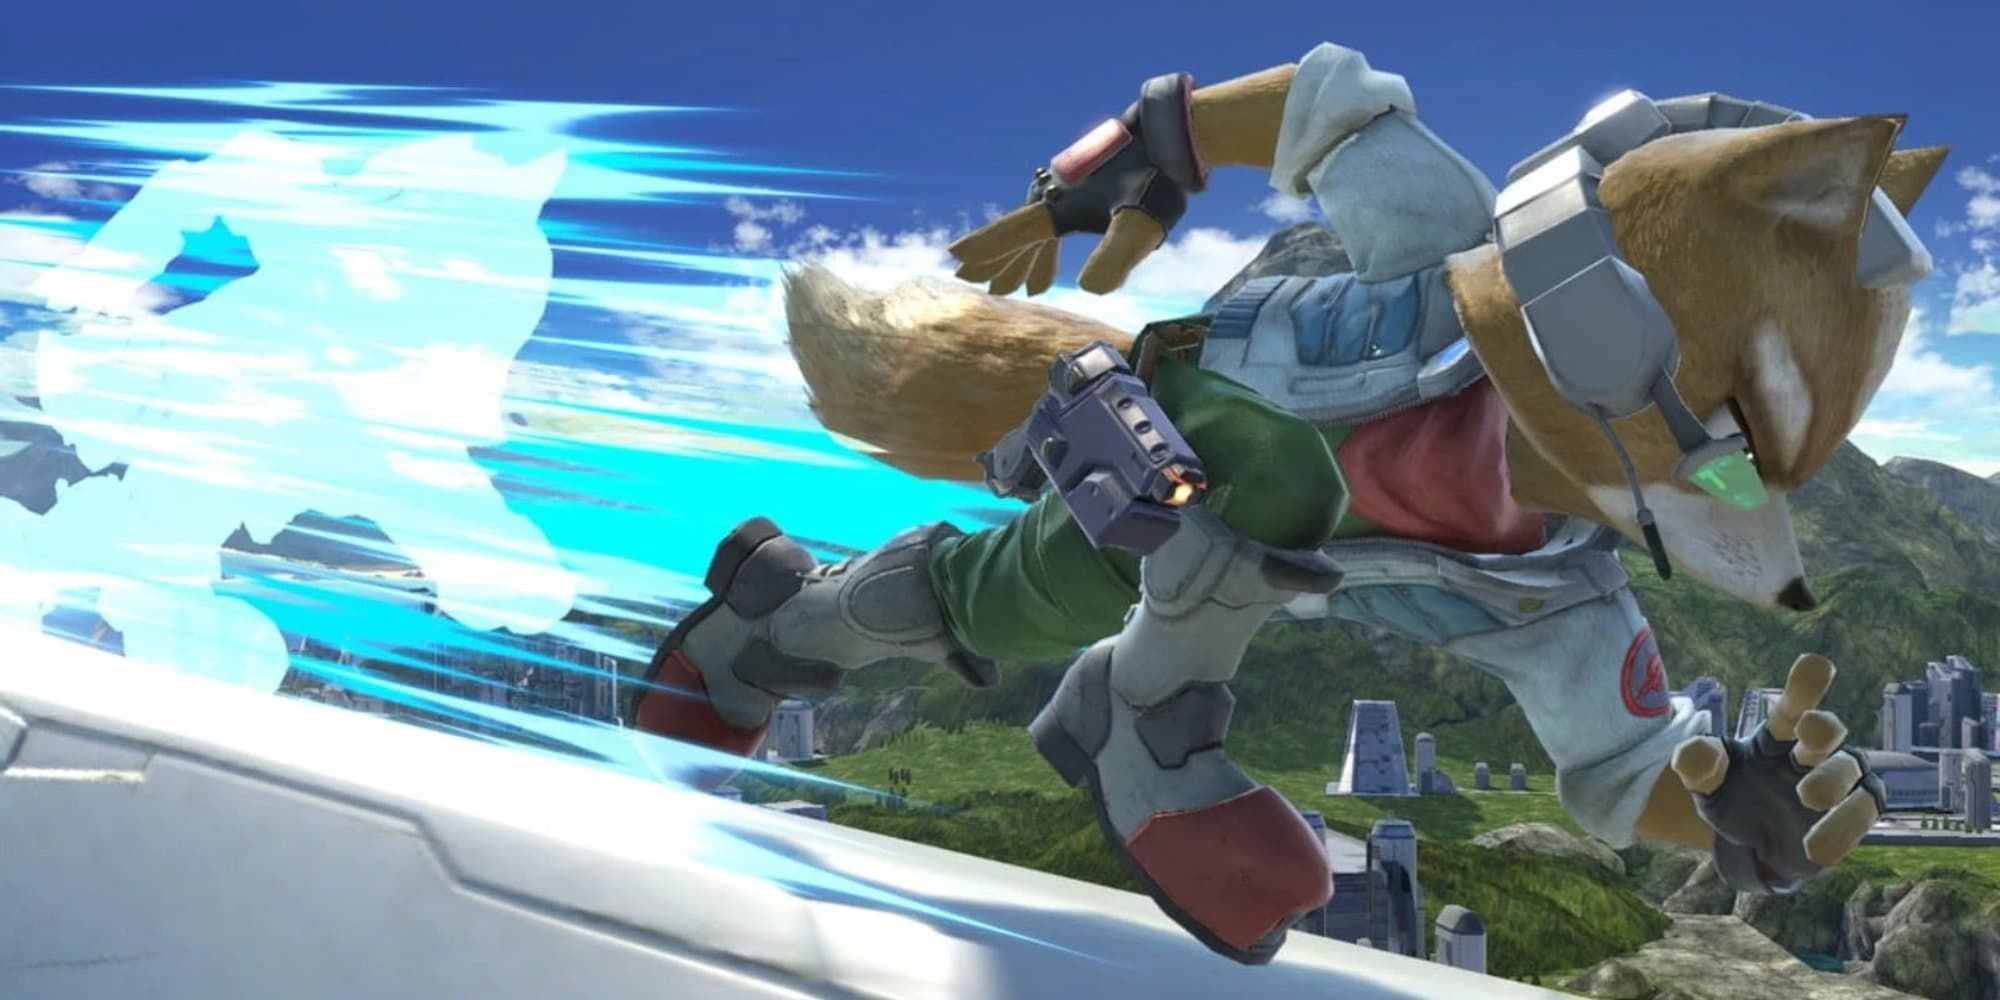 Fox McCloud of Starfox dashes forward in Super Smash Bros. leaving a blue streak behind him.